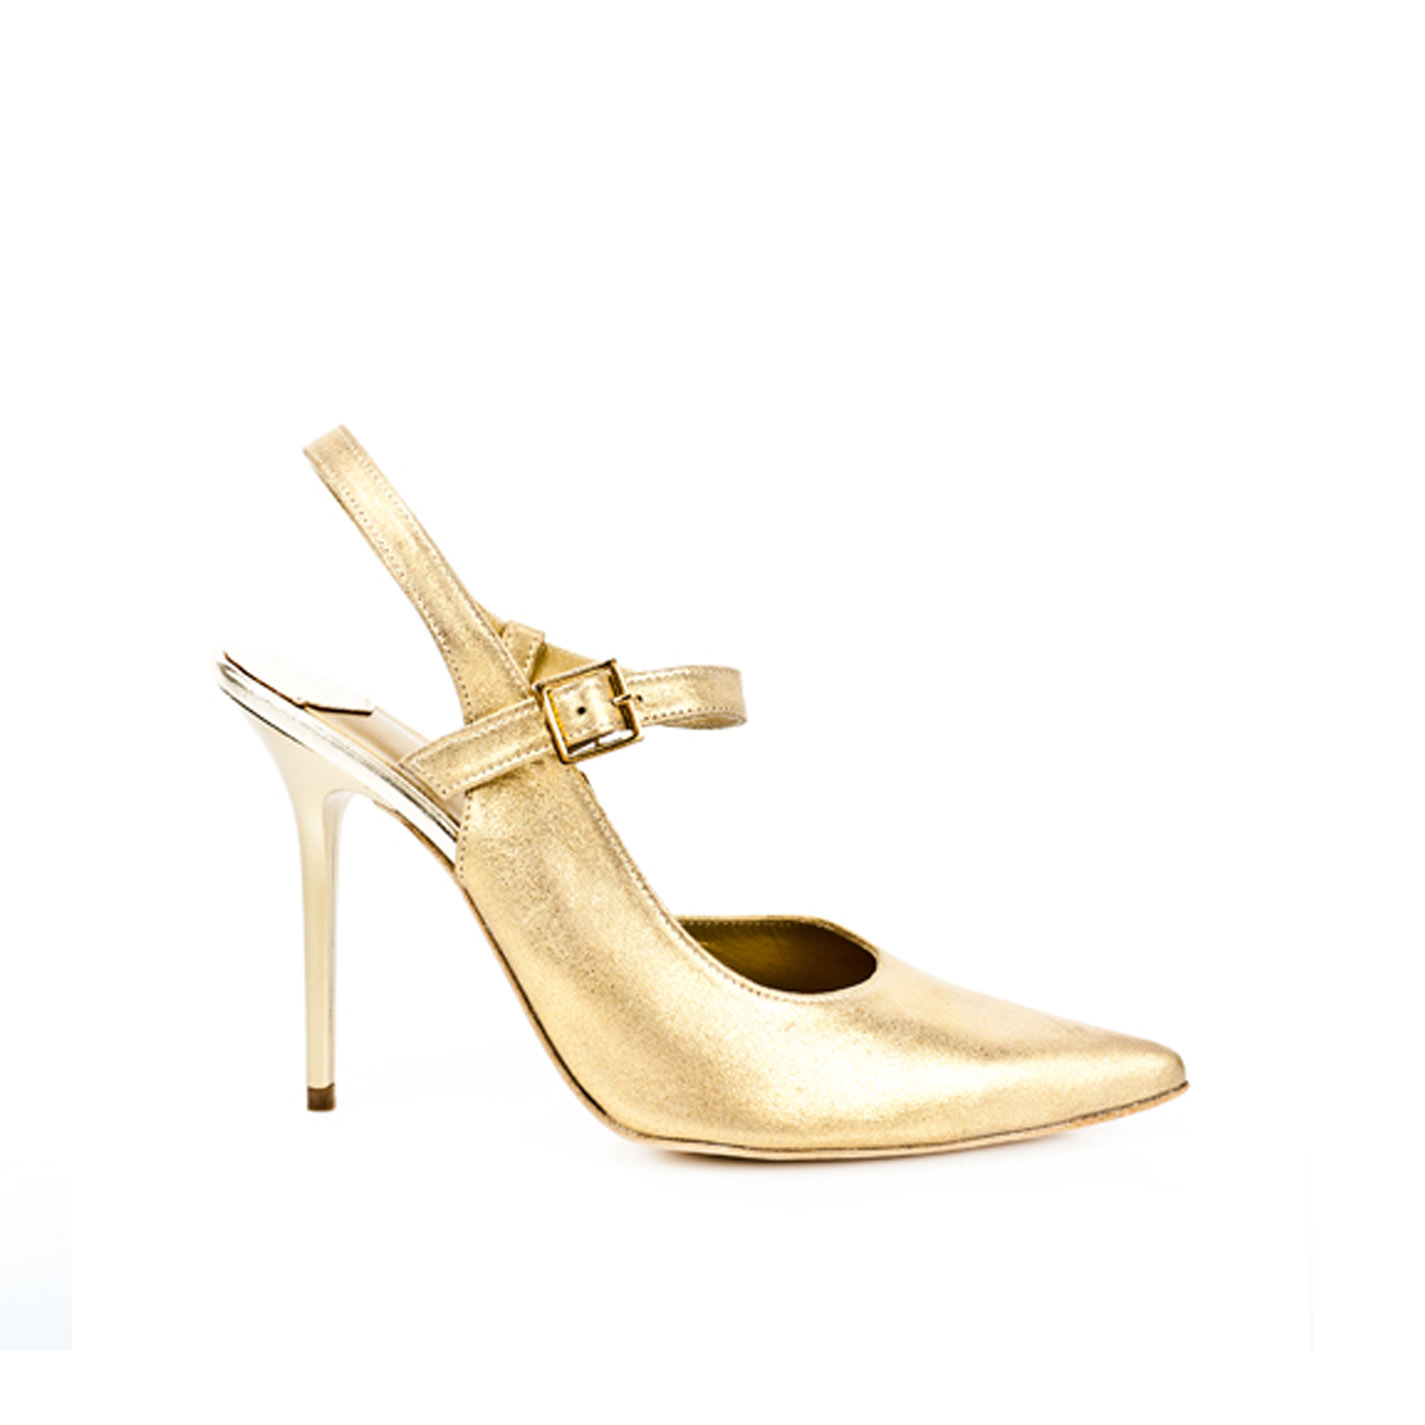 Zapatos mujer en piel dorado y de 10 cm